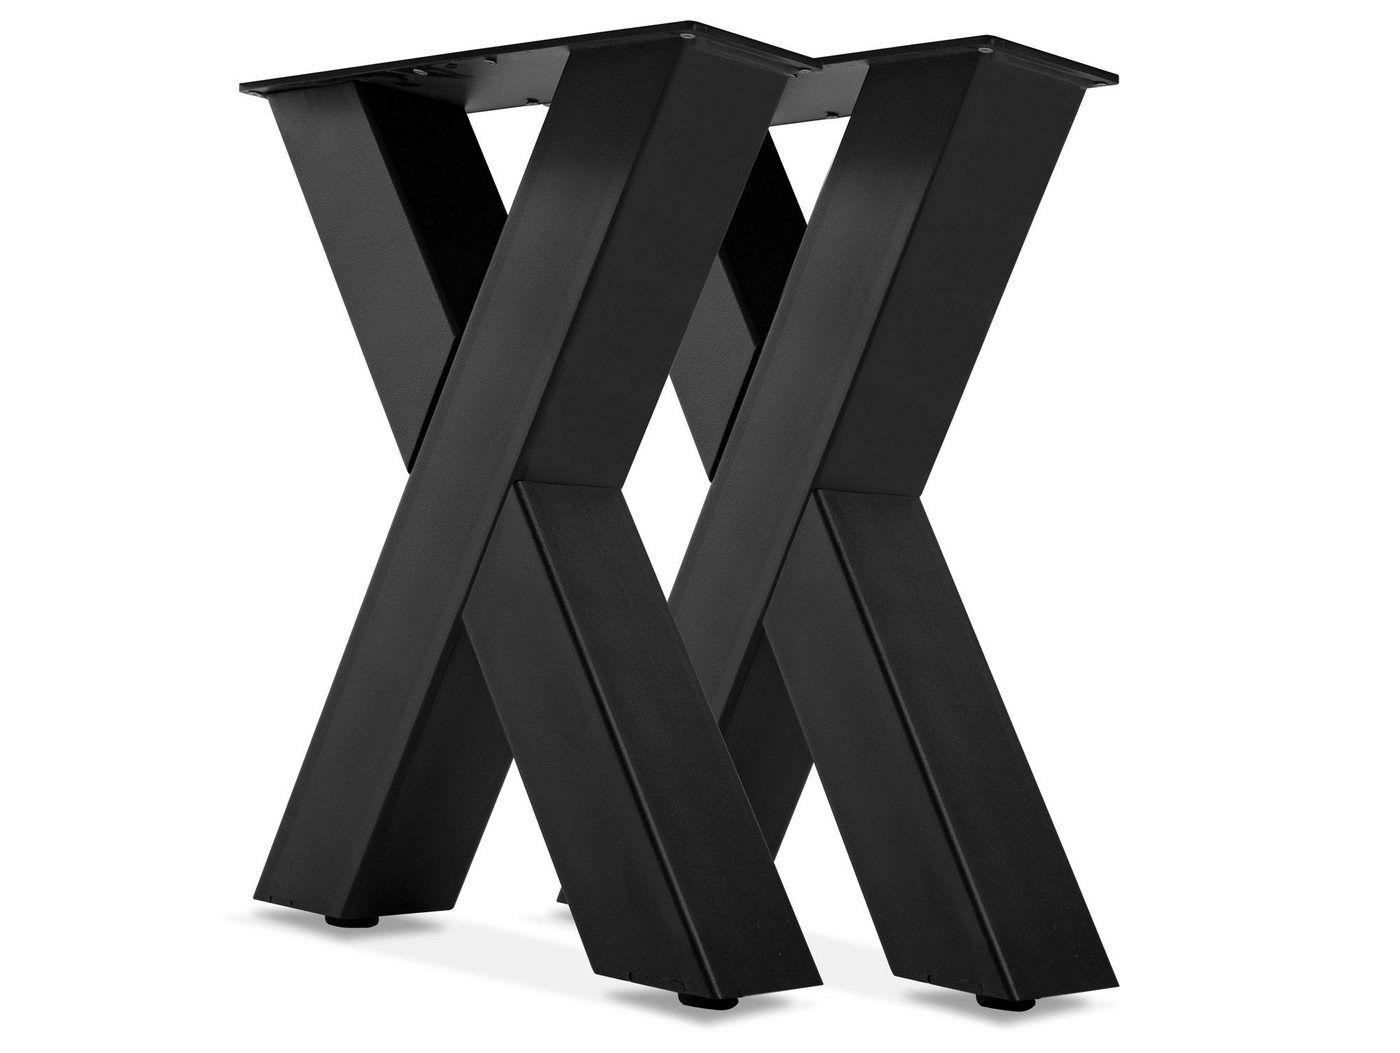 Moebel-Eins Sitzbank, 1 PAAR X-Beine für Bank, 46x40 cm, Material Stahl, schwarz von Moebel-Eins